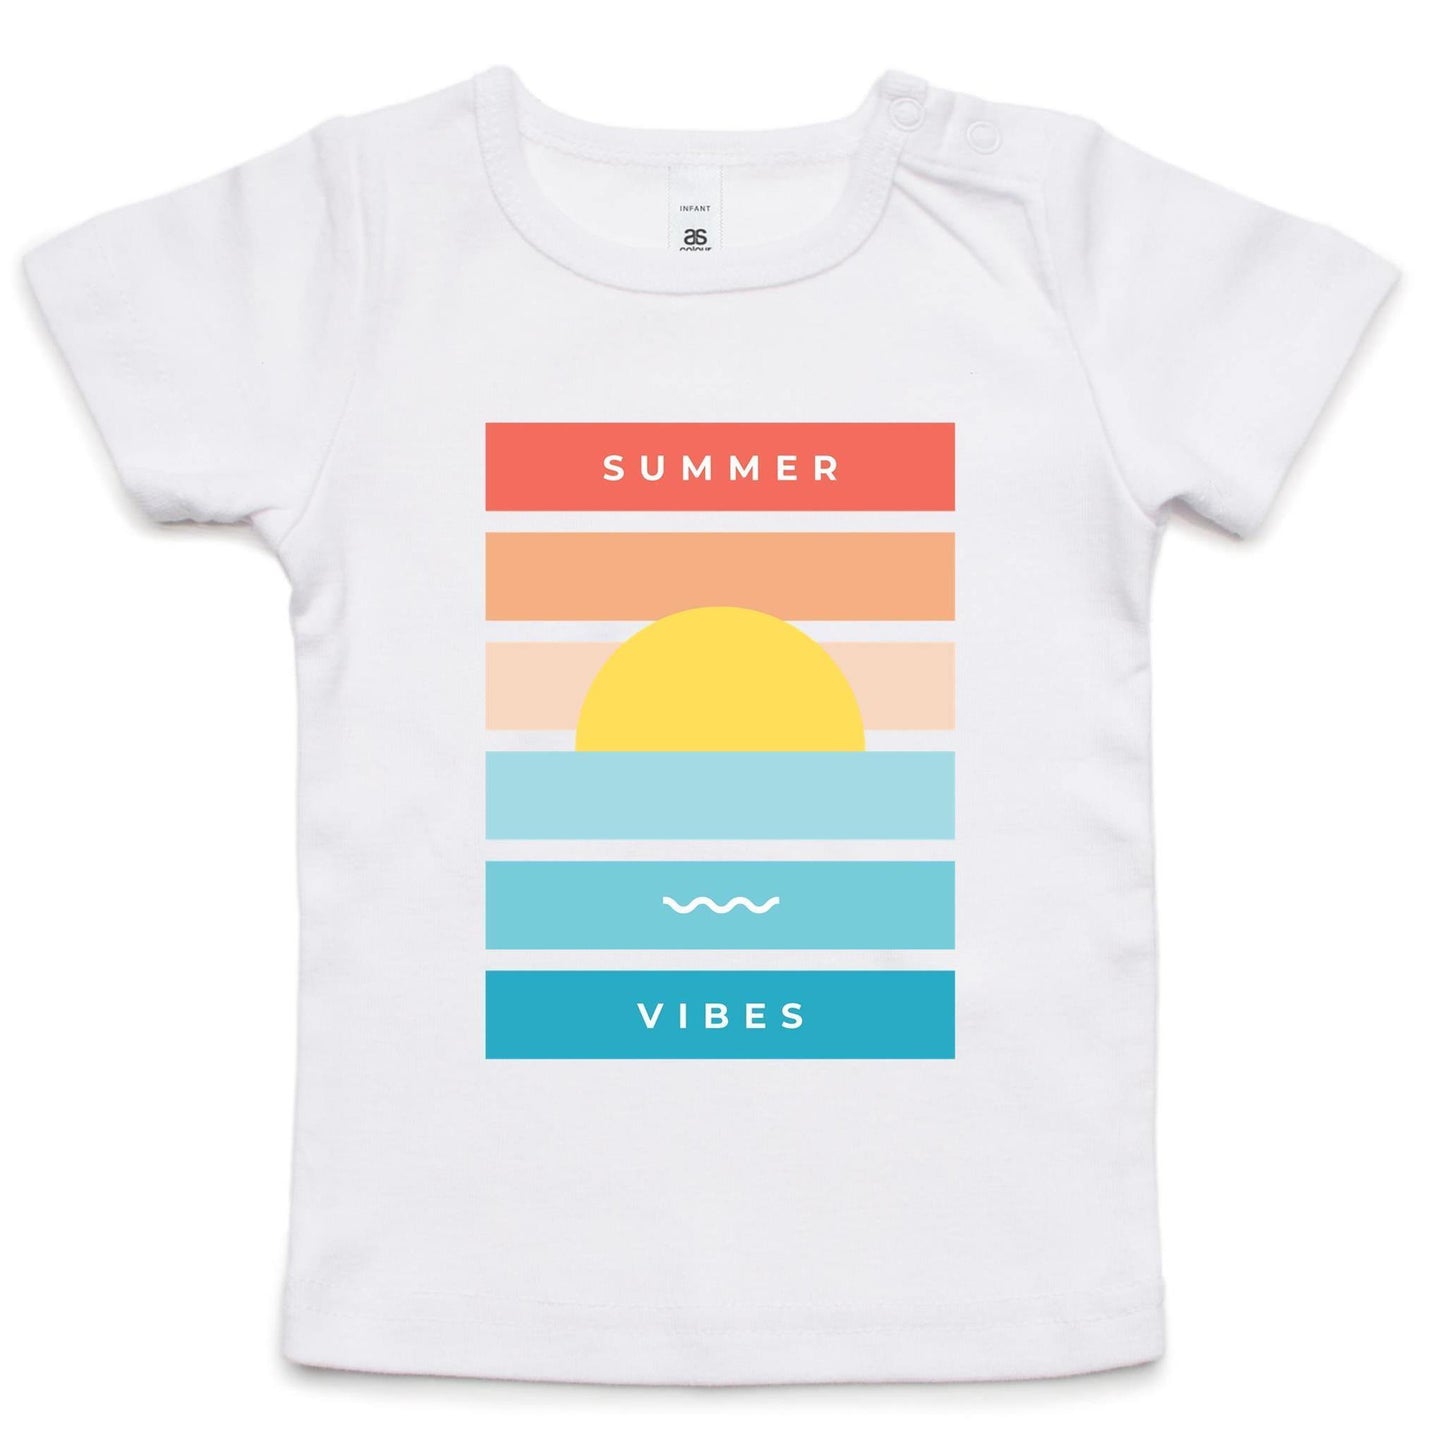 Summer Vibes - Baby T-shirt White Baby T-shirt kids Summer